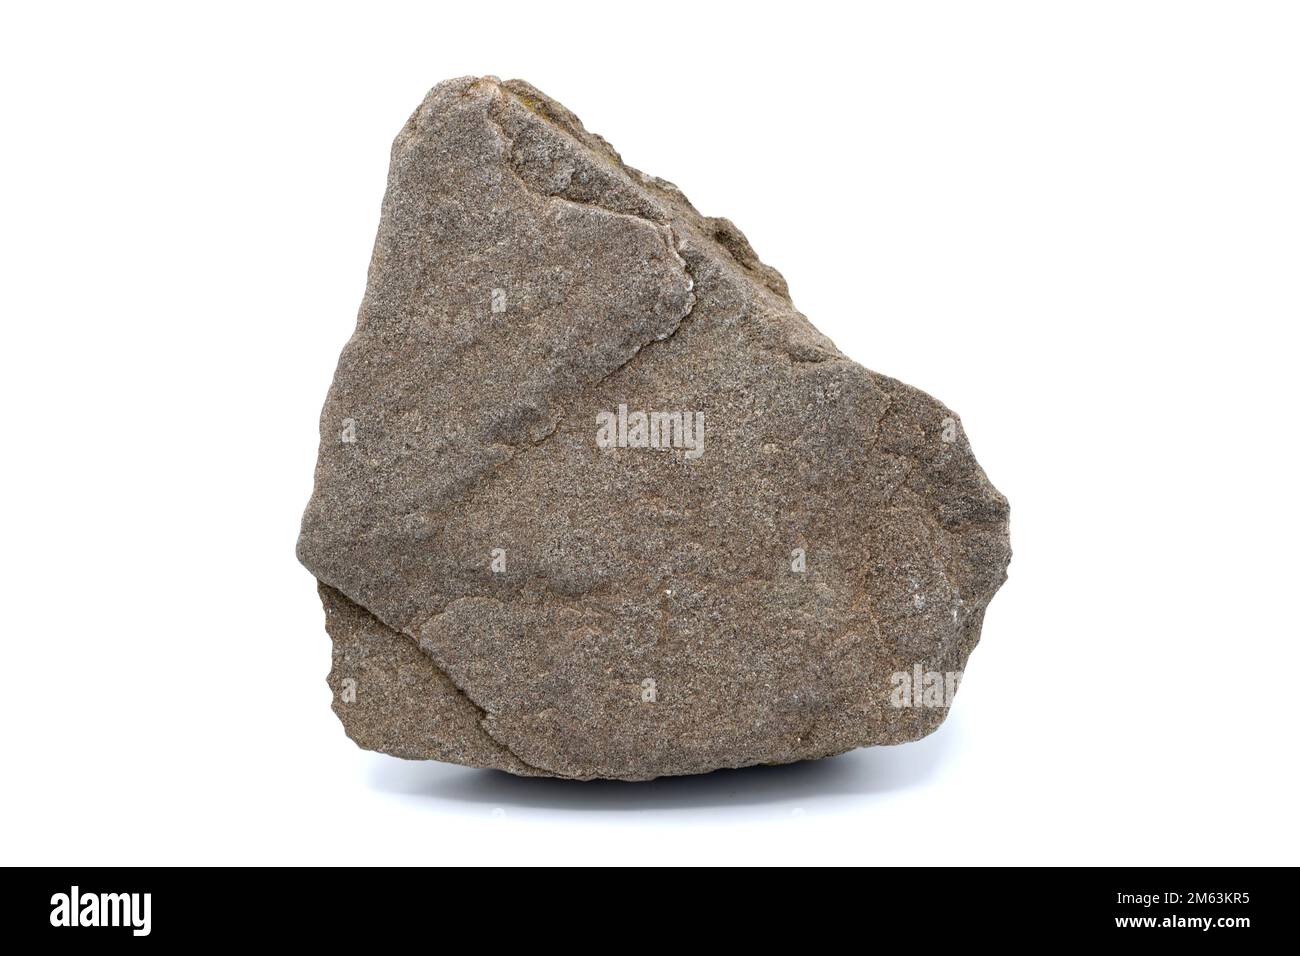 La arenisca es una roca sedimentaria clástica compuesta por granos de cuarzo. Esta muestra proviene de Cardona, Barcelona, Cataluña, España. Foto de stock